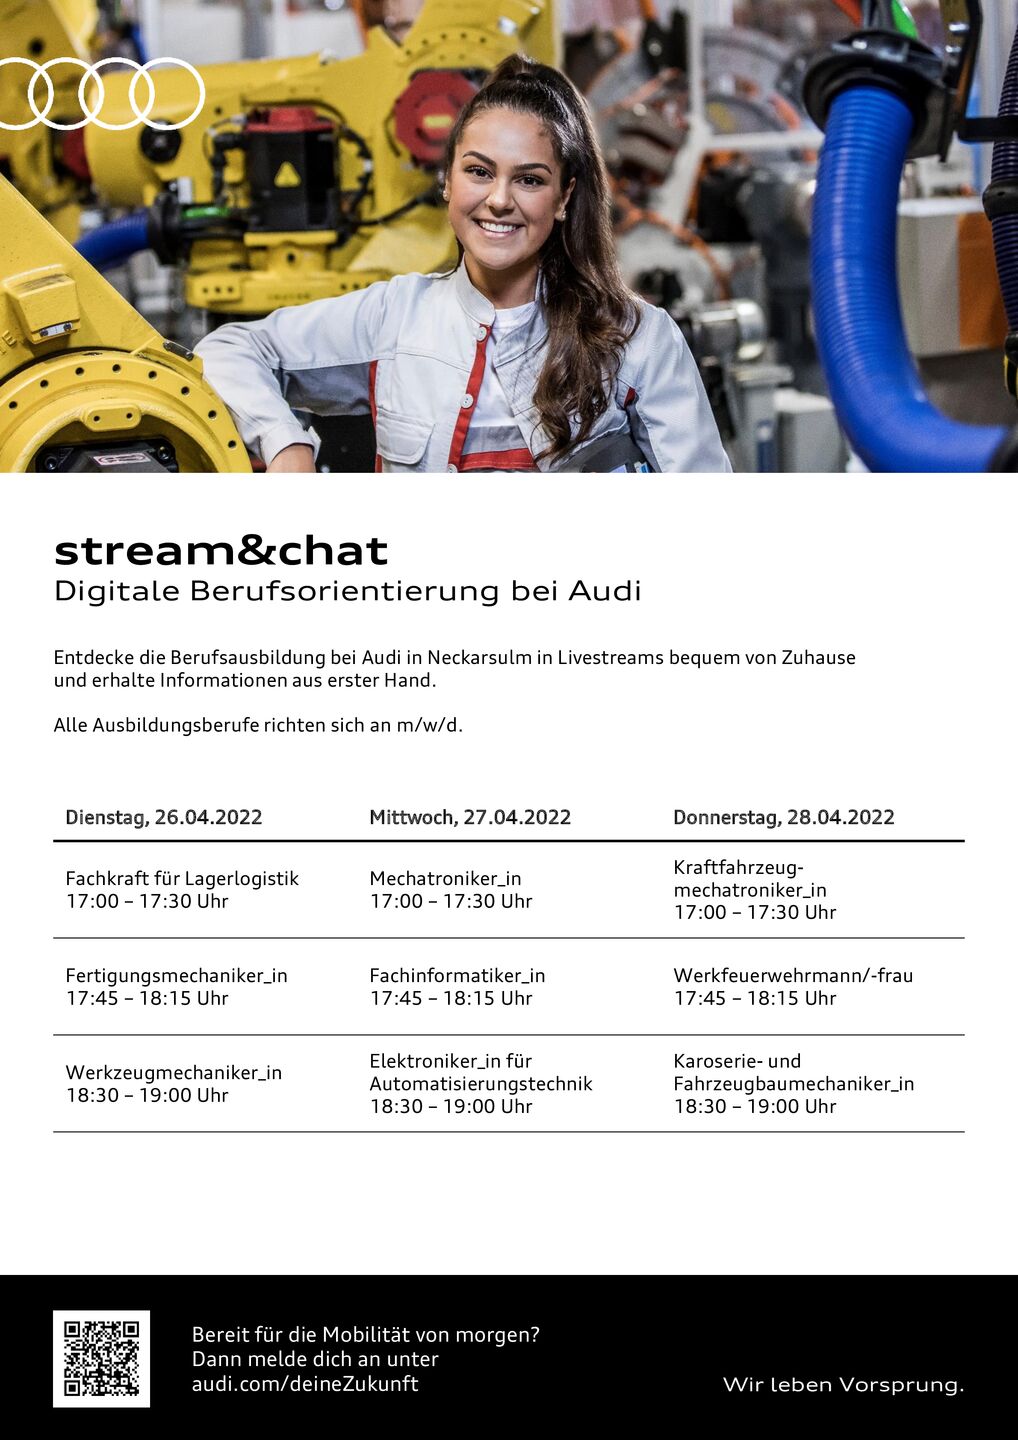 Dates for digital career orientation at Audi Neckarsulm